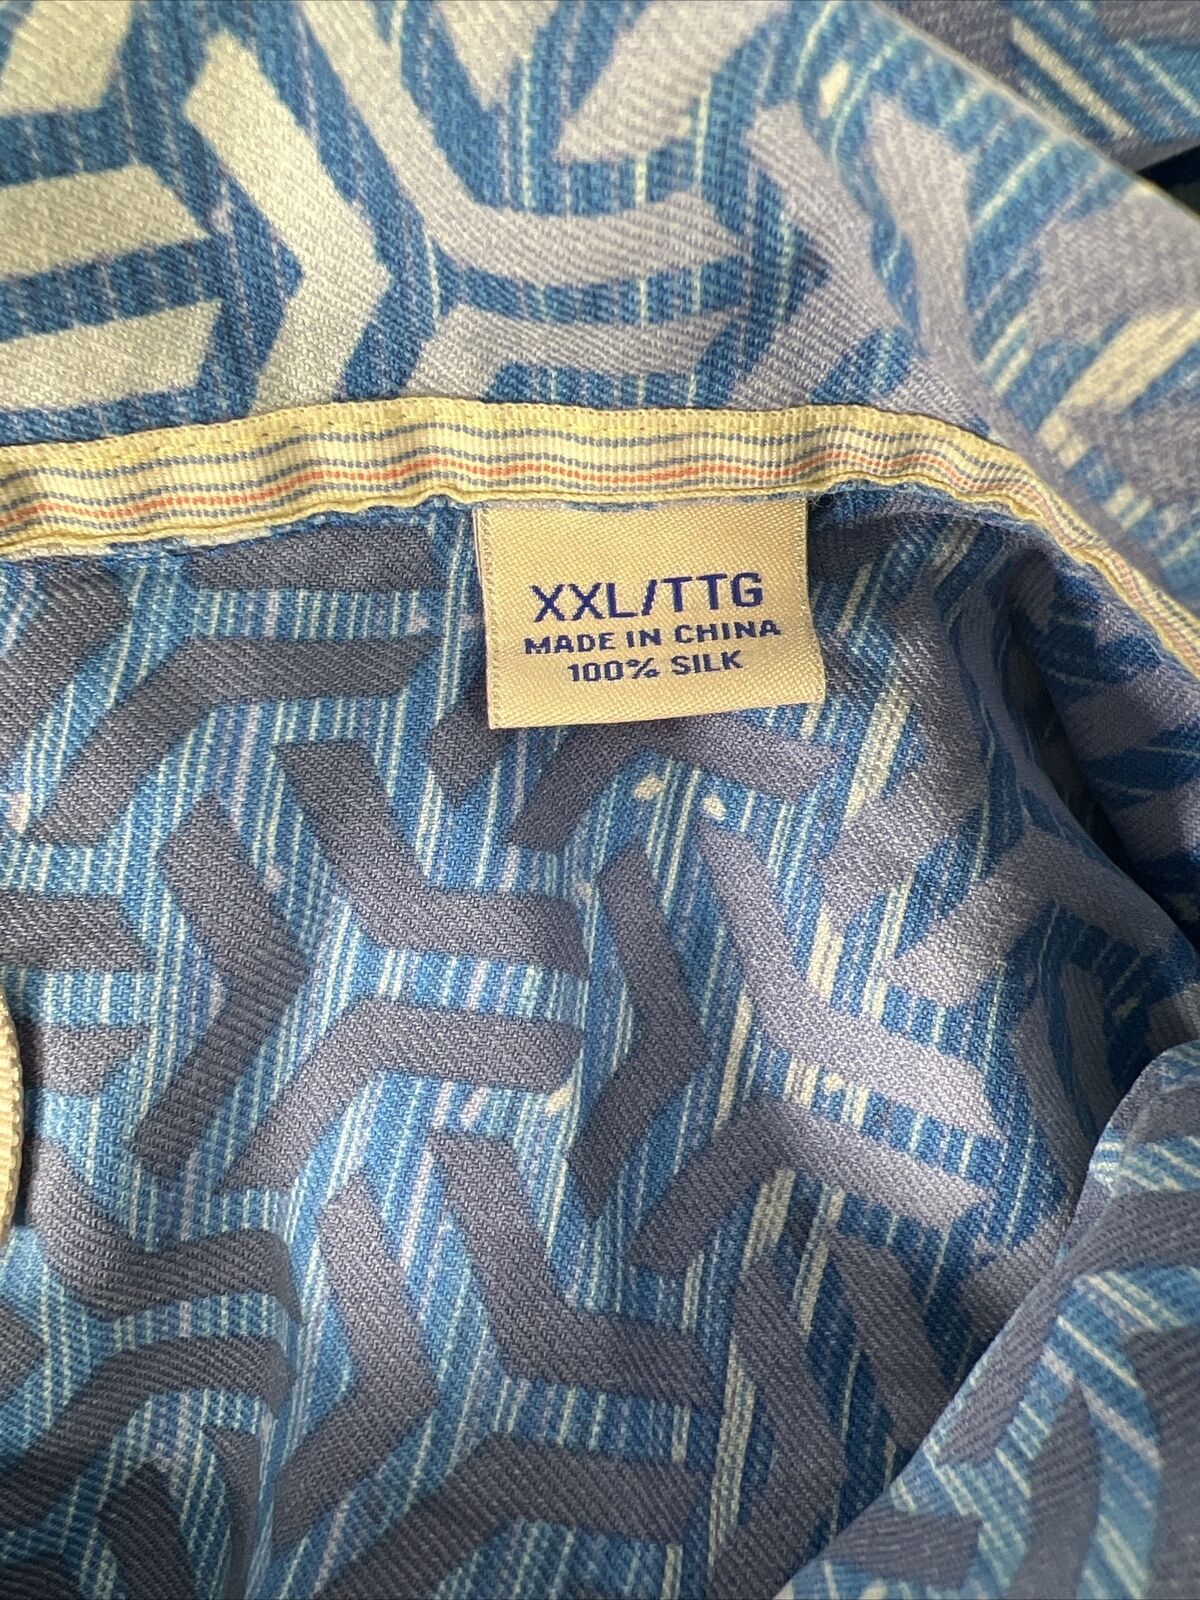 Tommy Bahama Men's Blue 100% Silk Button Up Shirt - XXL